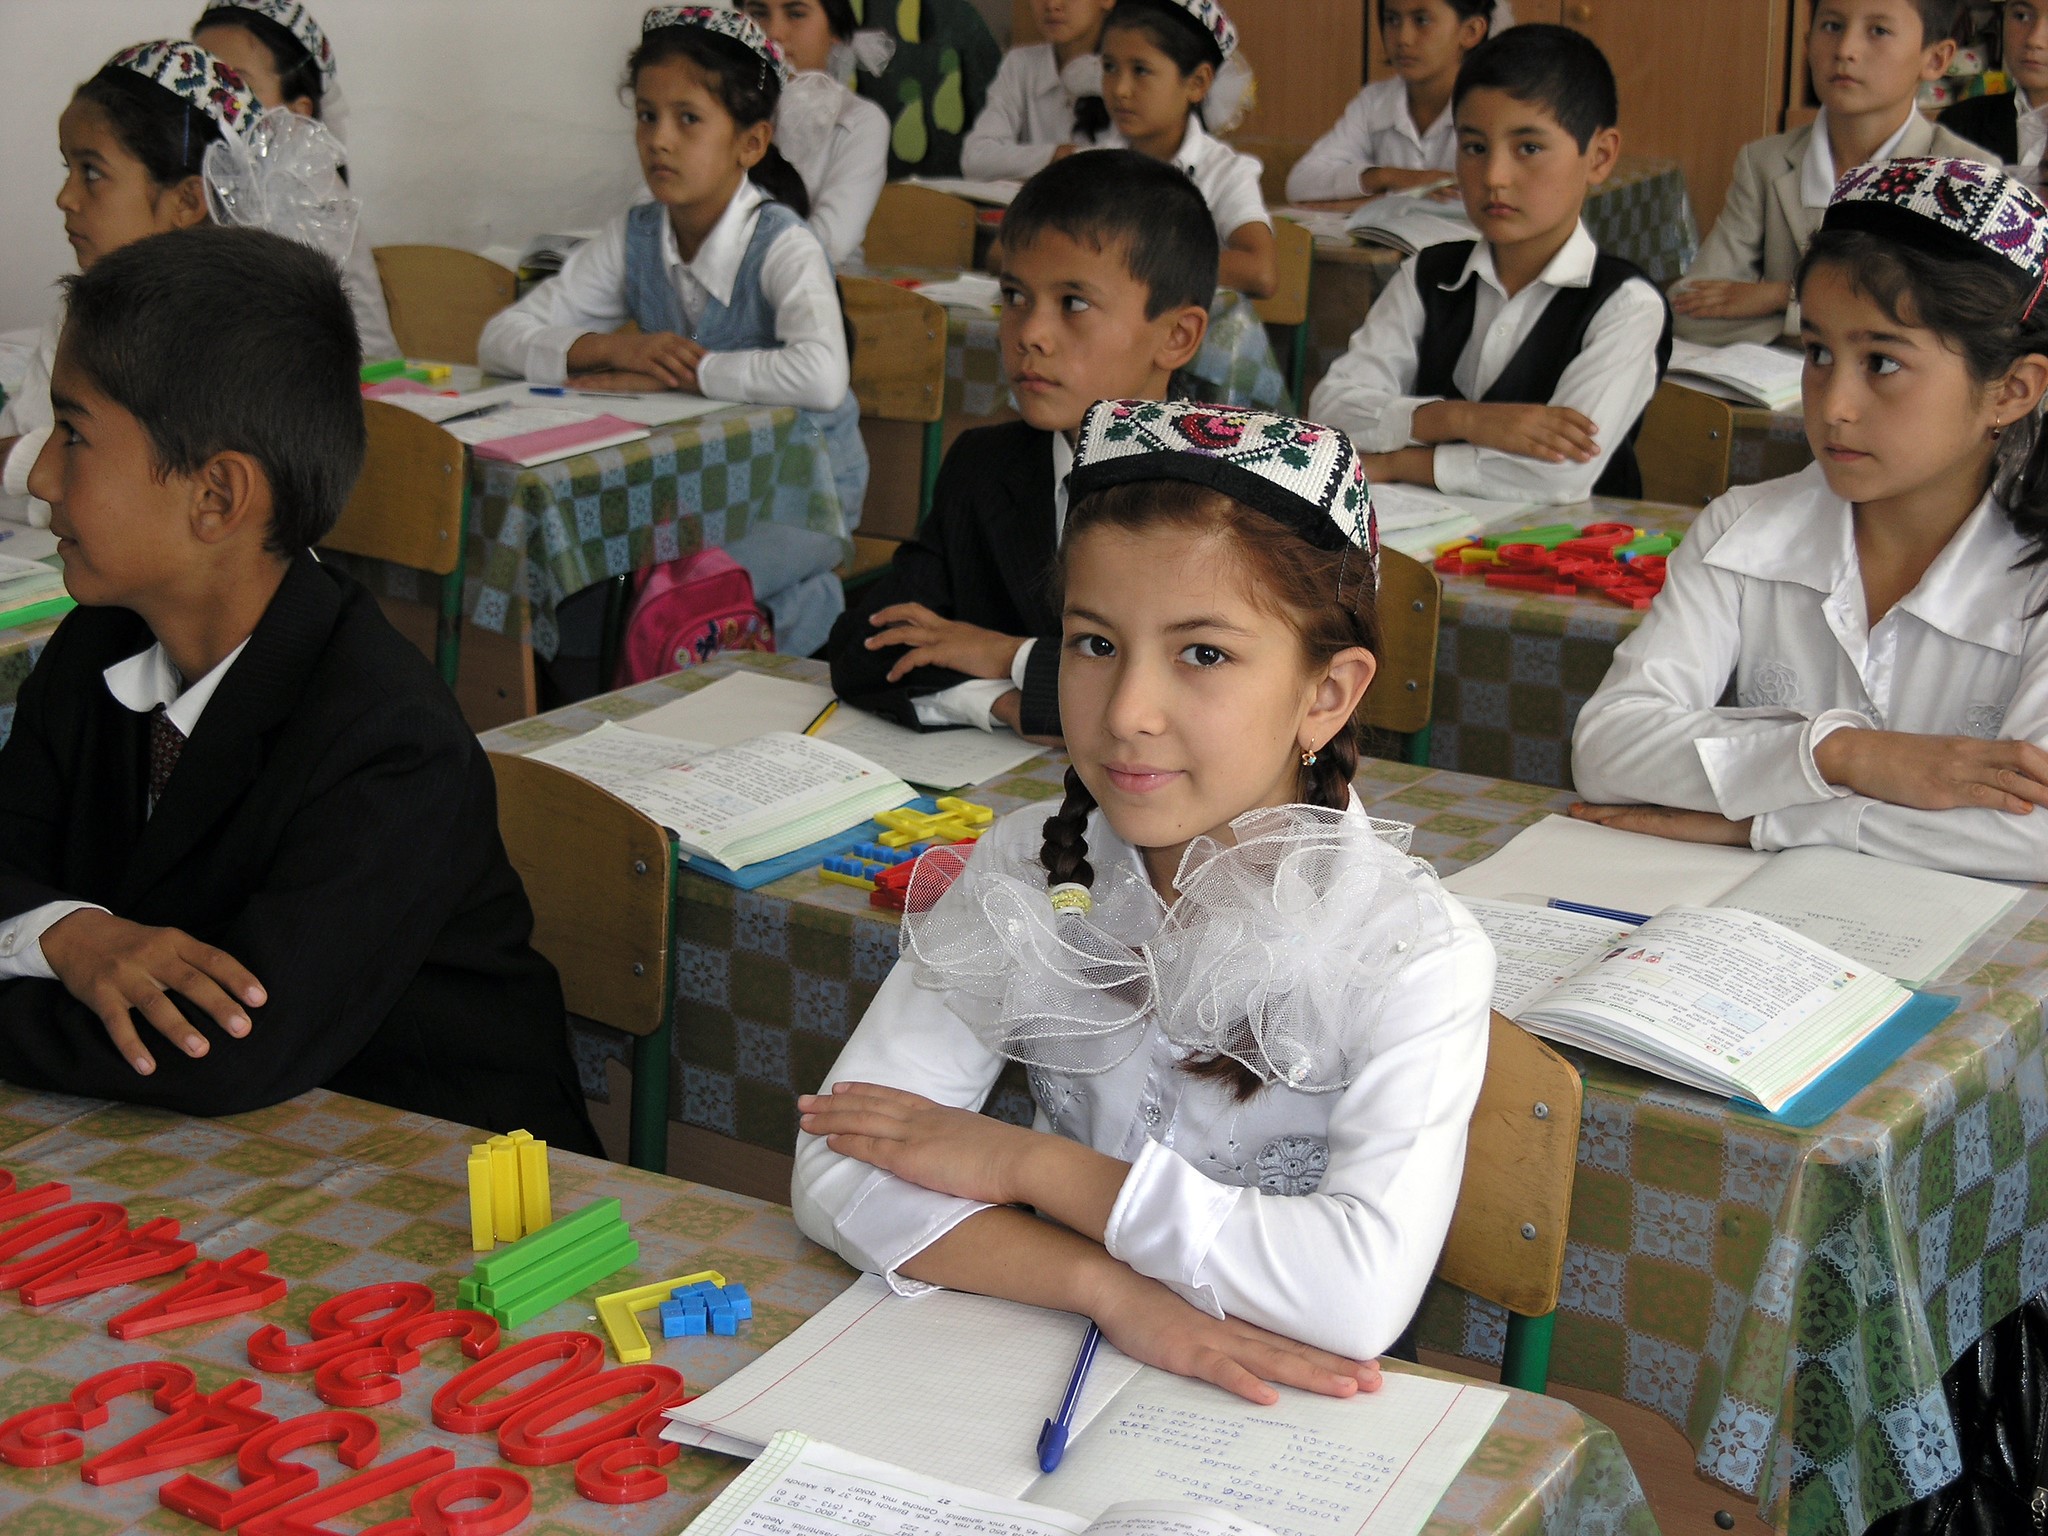 education in turkmenistan essay